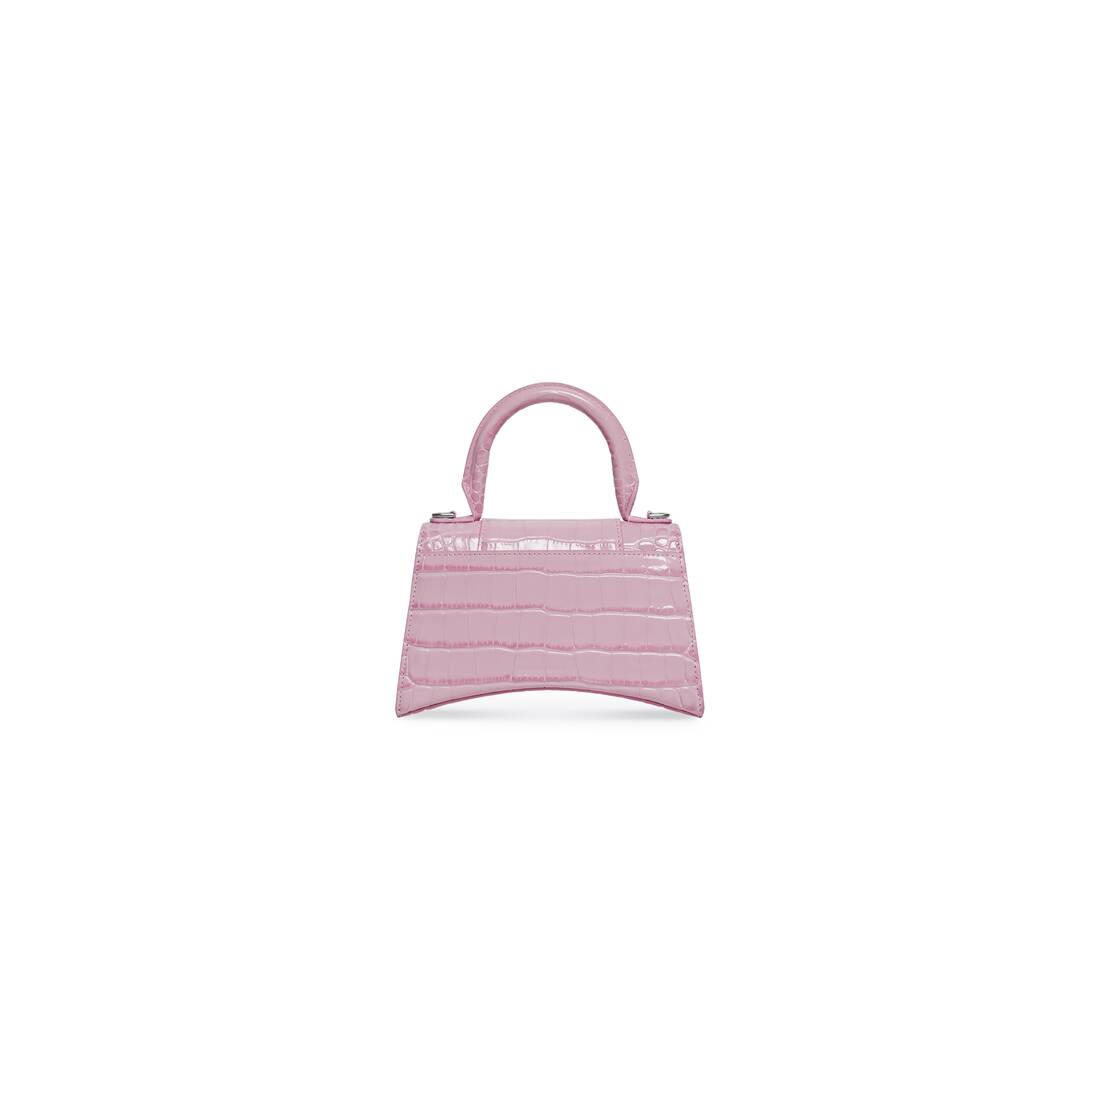 Women's Hourglass Xs Handbag Crocodile Embossed in Light Pink